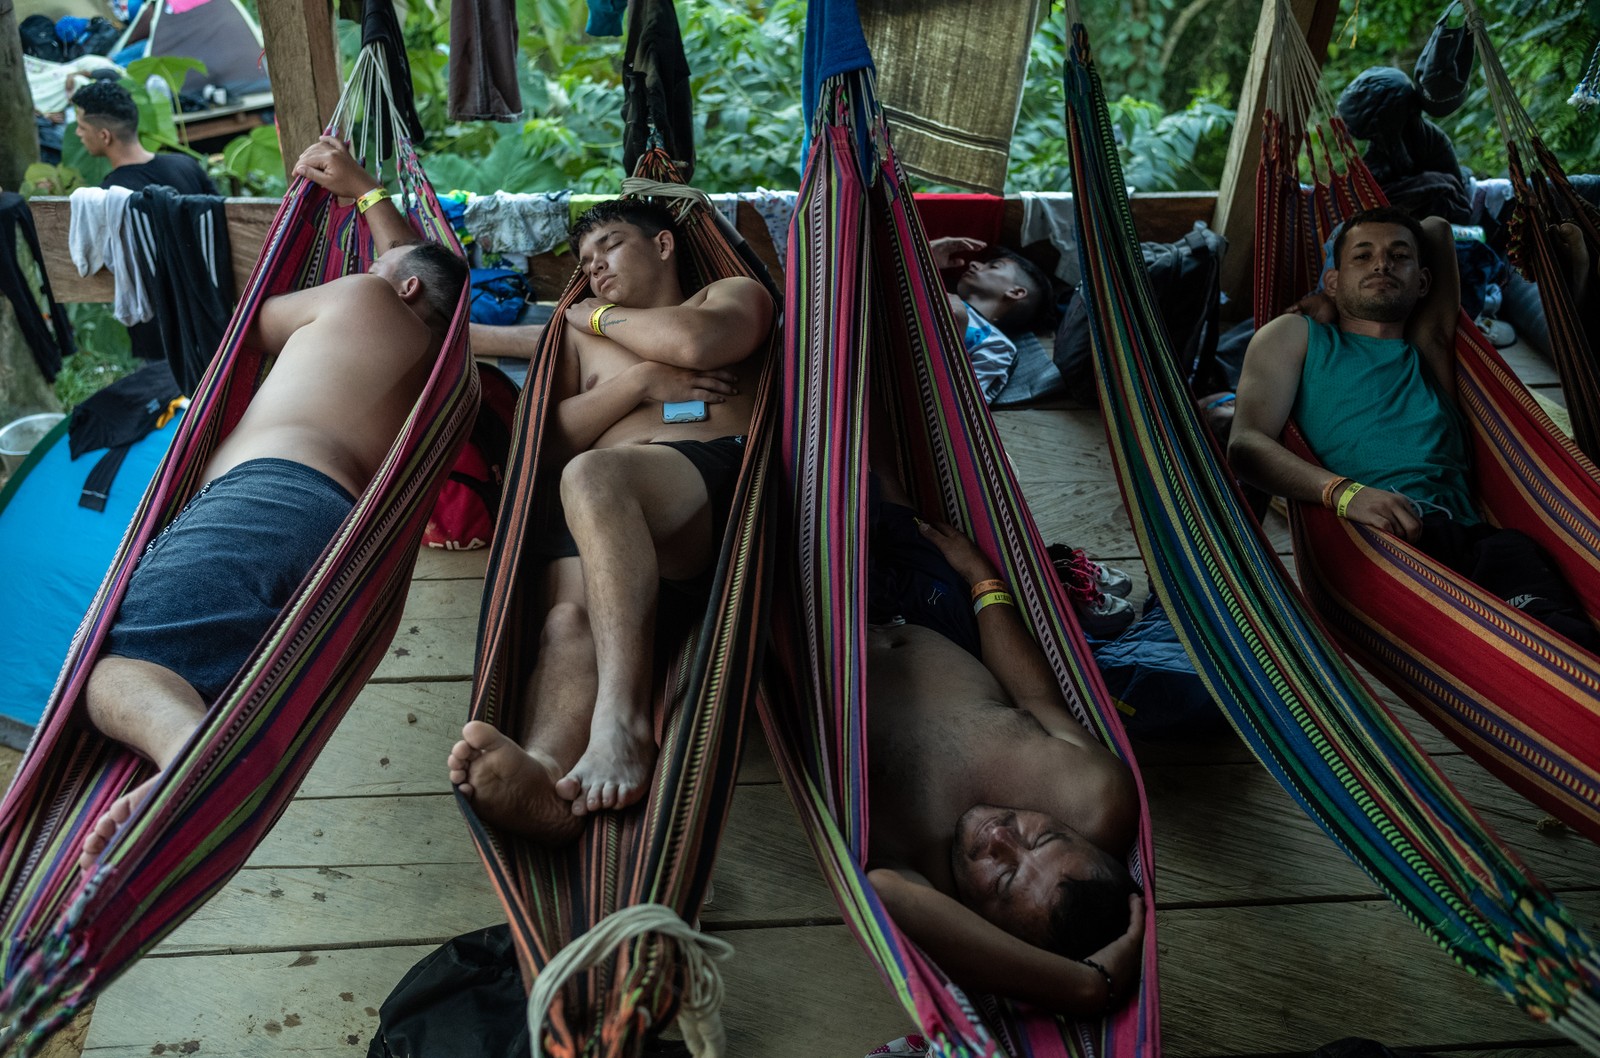 Migrantes descansam em redes no último acampamento antes da fronteira com o Panamá, após um dia de caminhada no DariŽn Gap, na Colômbia — Foto: Federico Rios/The New York Times